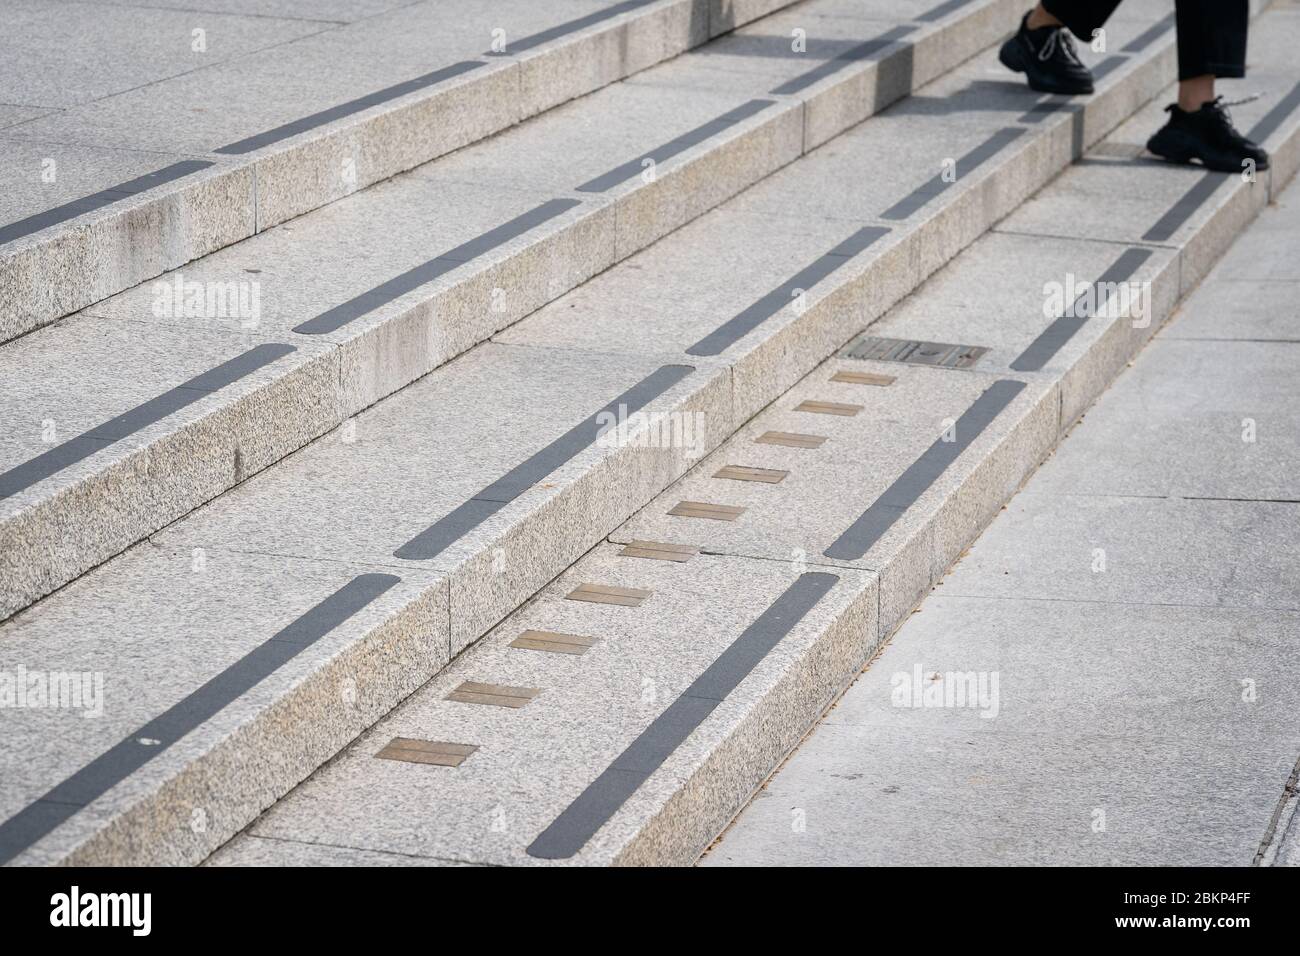 Una persona pasa los marcadores de medición imperiales incorporados en los escalones que conducen a la Galería Nacional de Retratos en Trafalgar Square en Londres mientras el Reino Unido continúa en el cierre para ayudar a frenar la propagación del coronavirus. Foto de stock